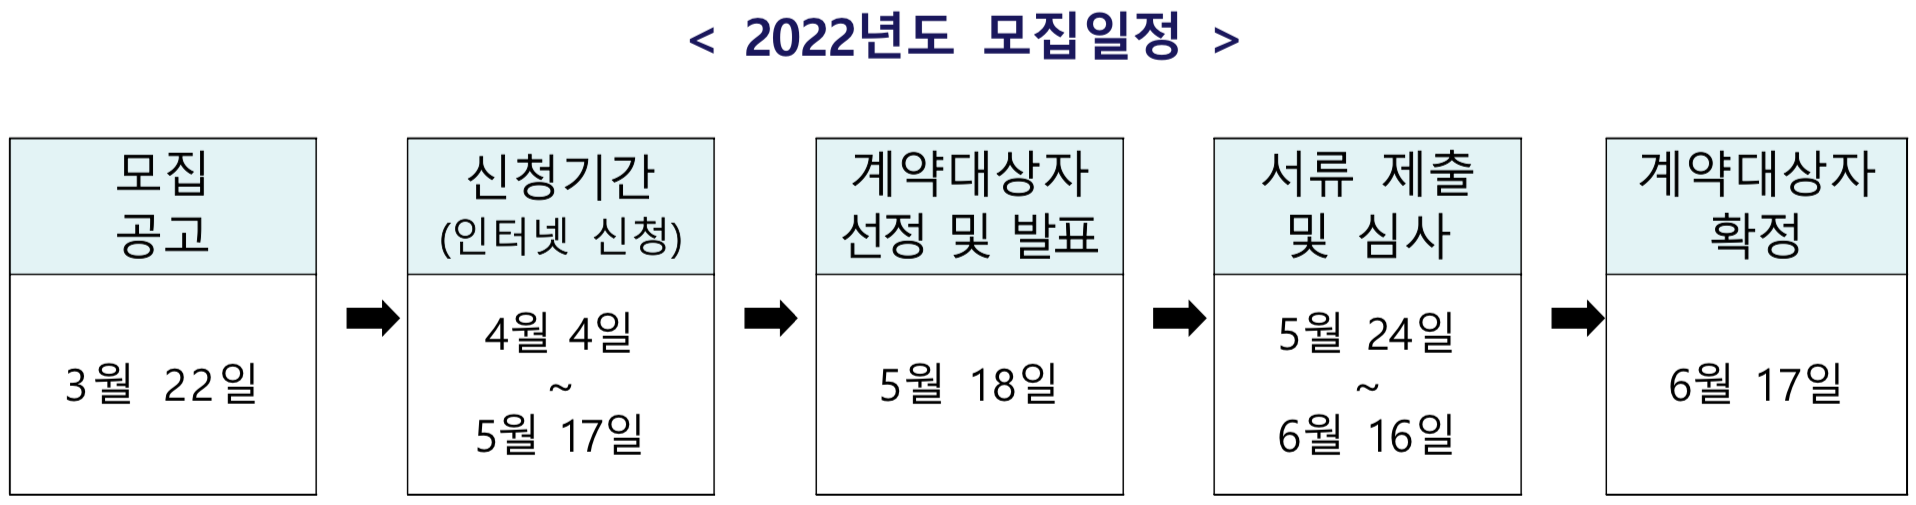 동행복권-2022년도-로또-복권-판매점-모집일정